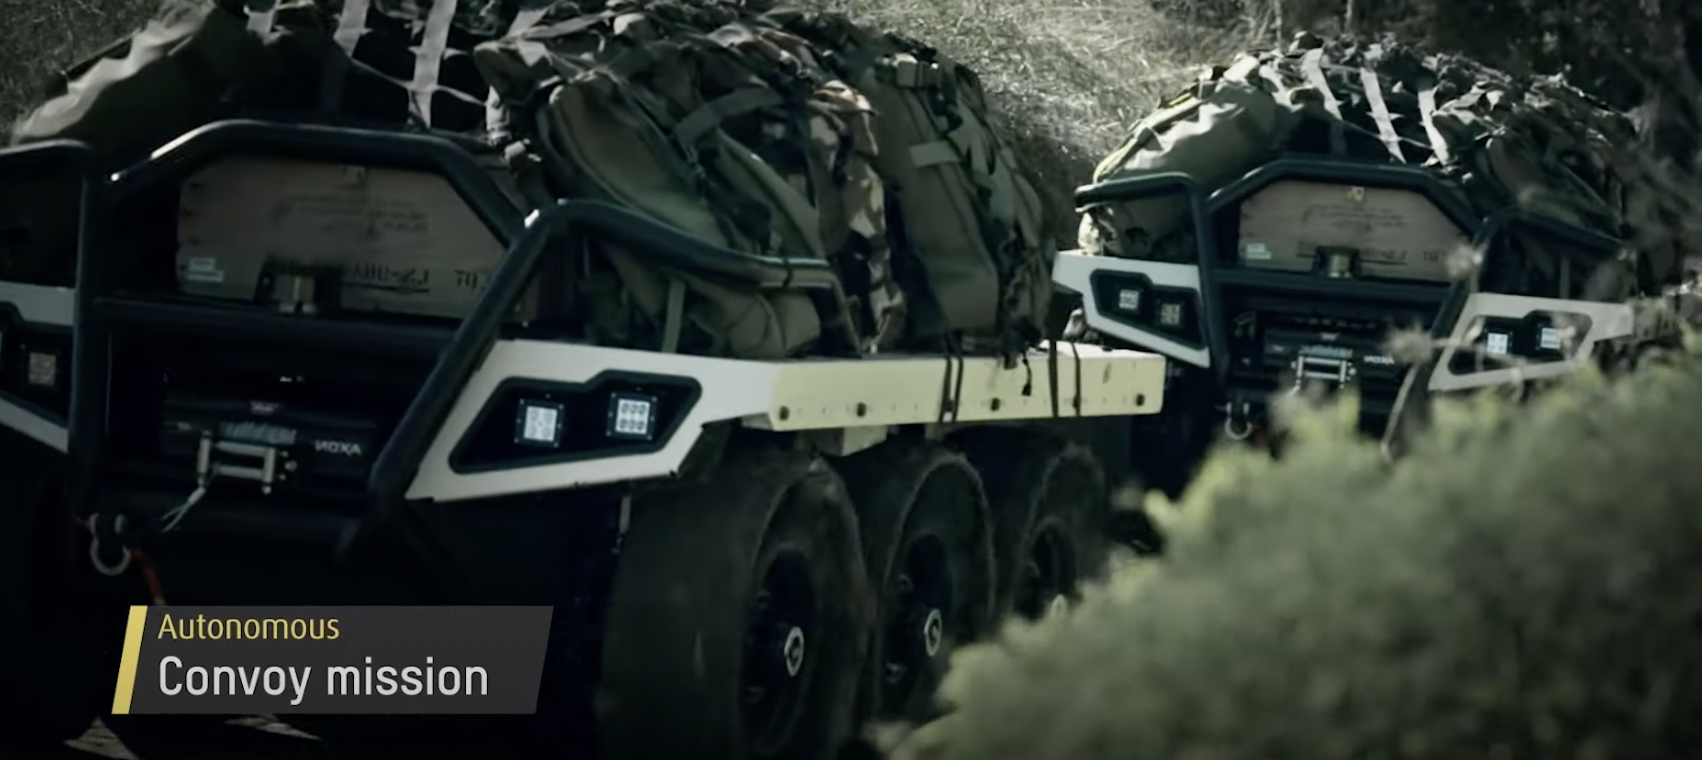 Η Elbit Systems και η Roboteam παρουσιάζουν το ROOK ένα στρατιωτικό μη-επανδρωμένο επίγειο όχημα